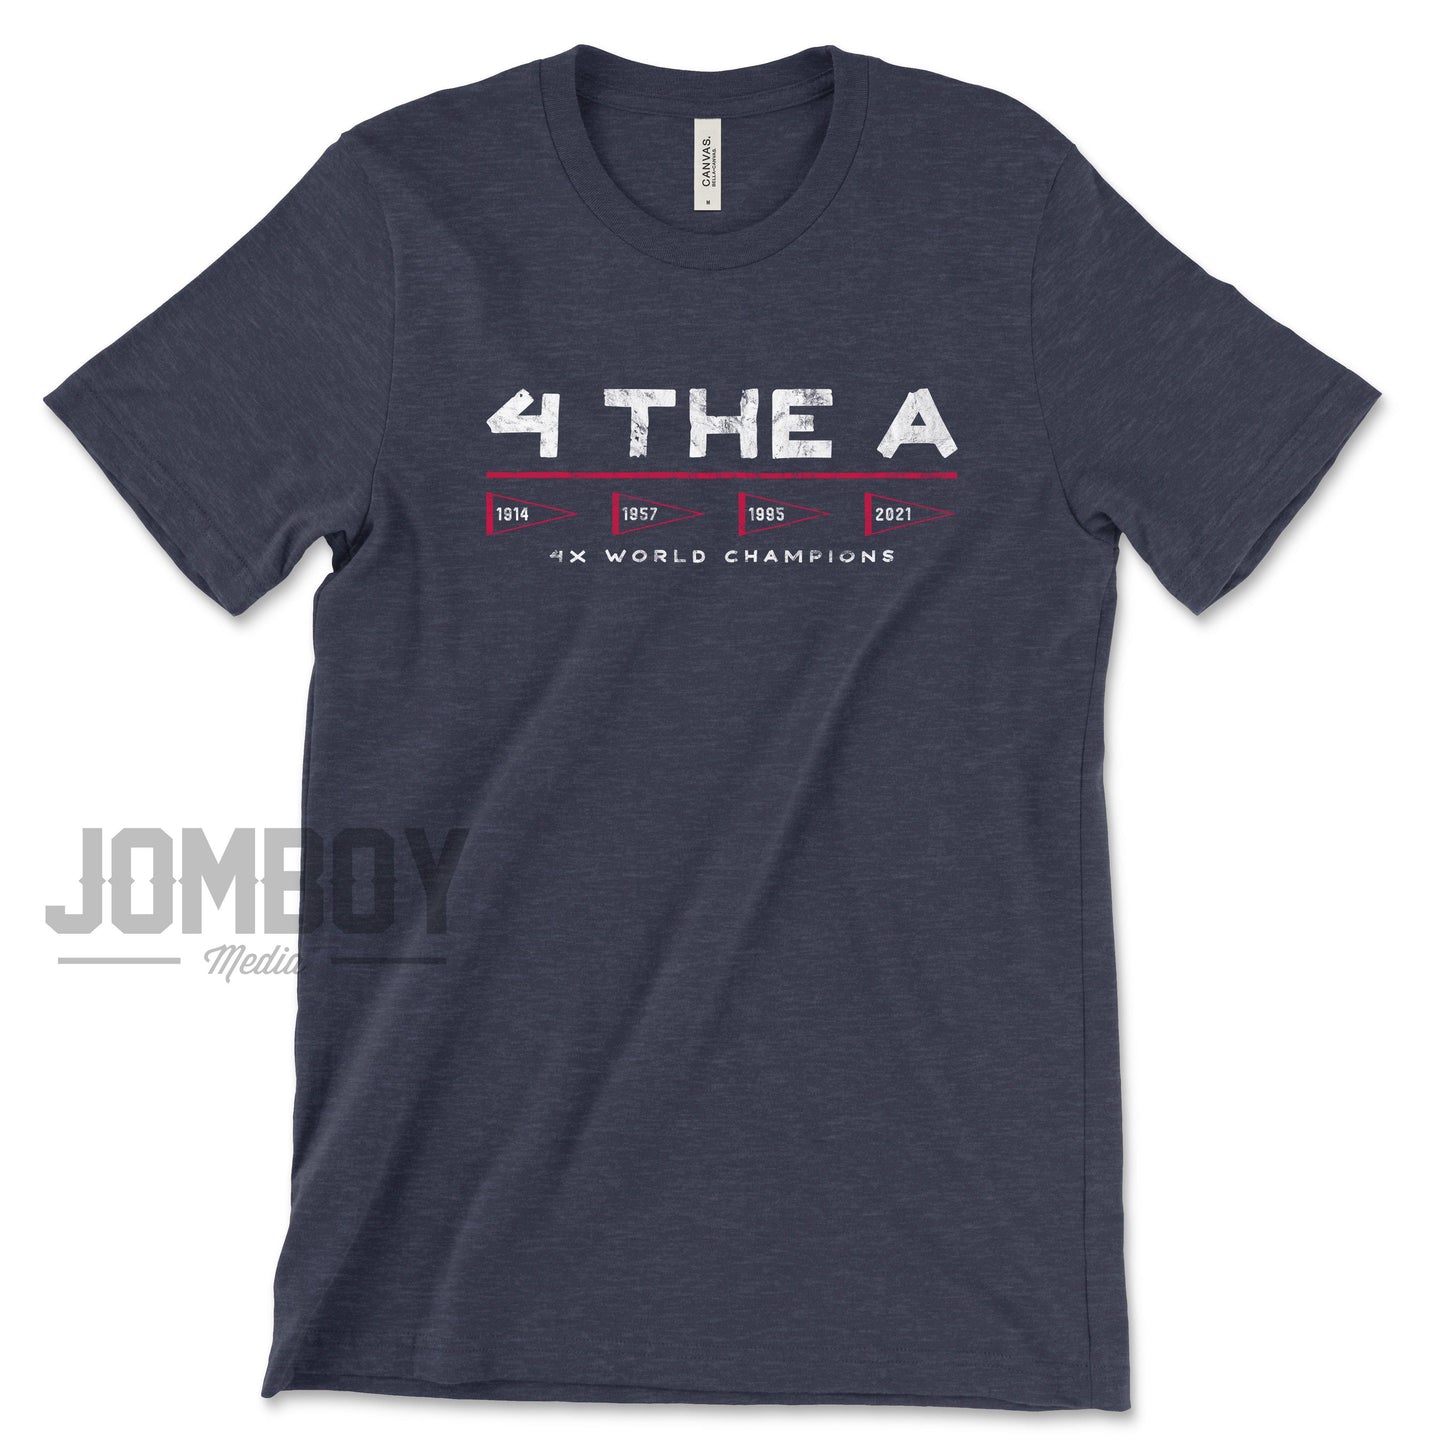 4 The A | T-Shirt - Jomboy Media